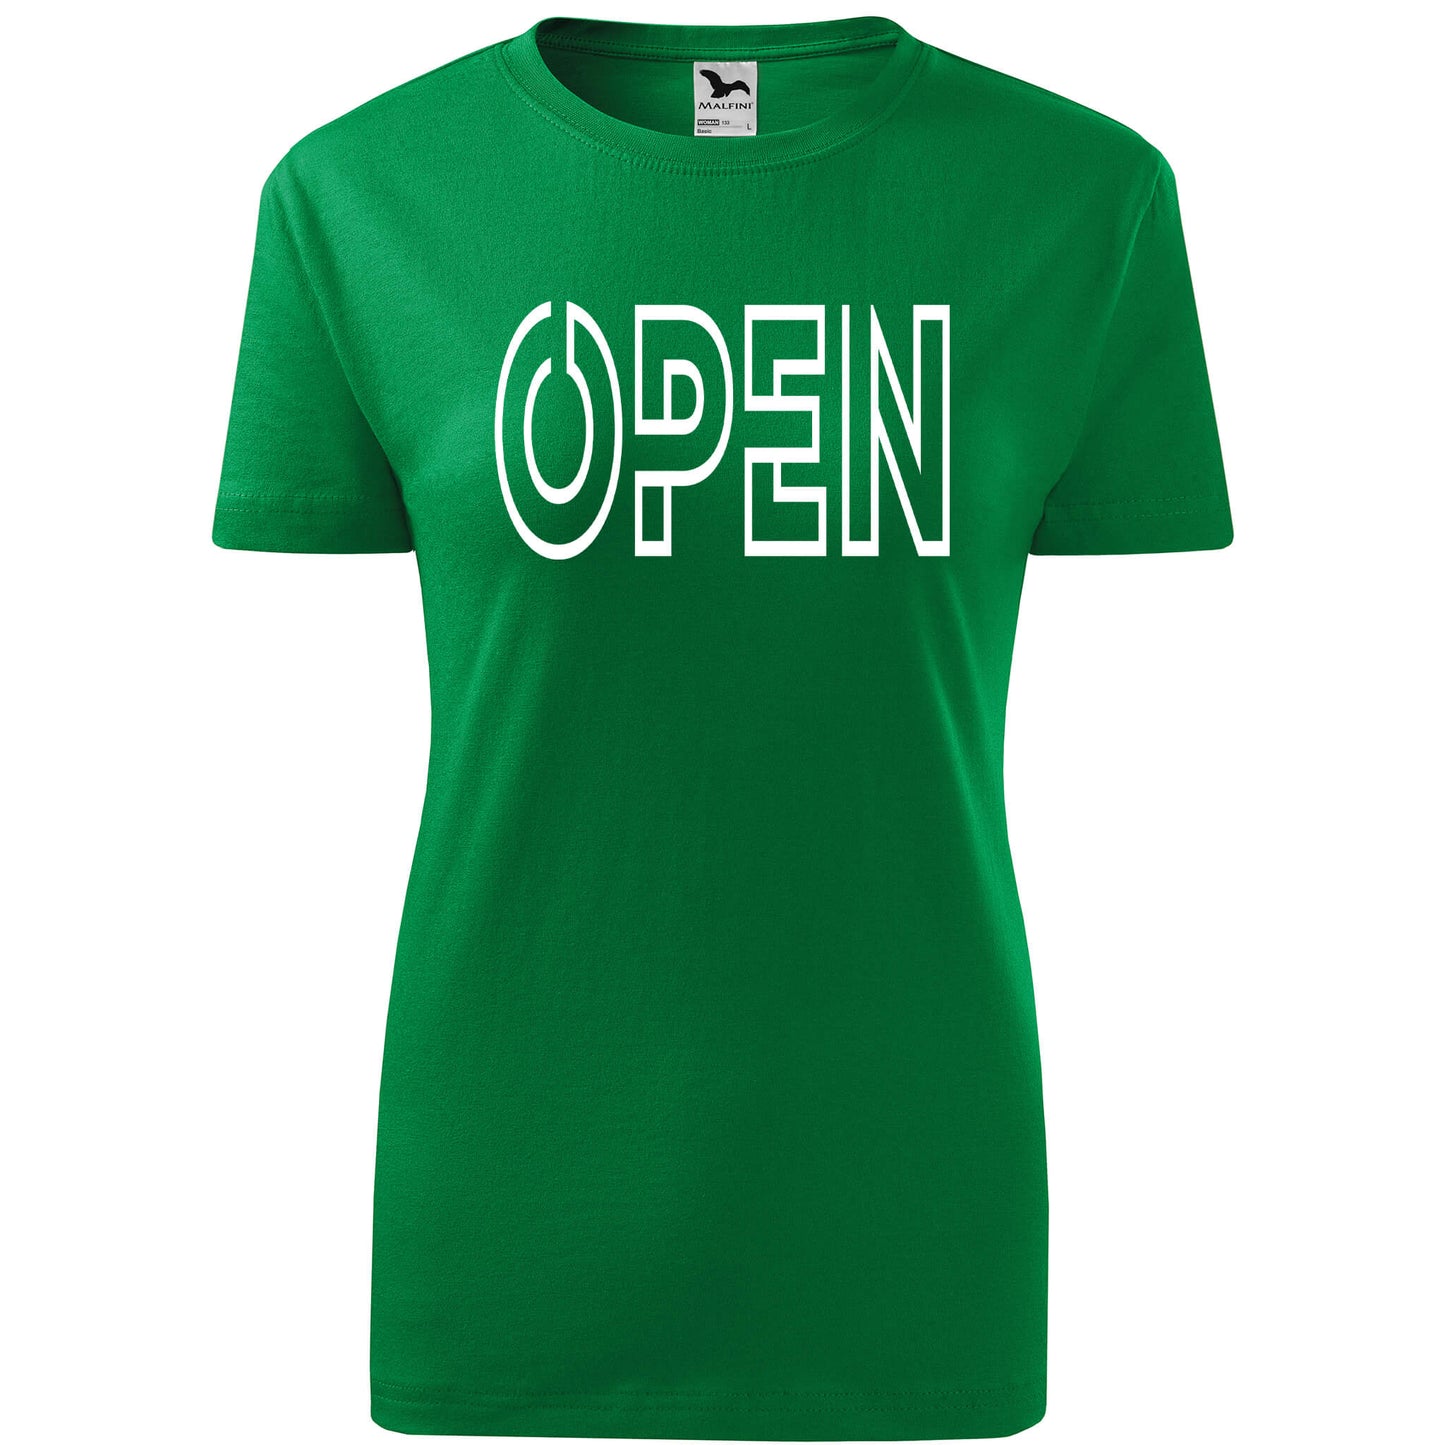 T-shirt - OPEN - rvdesignprint